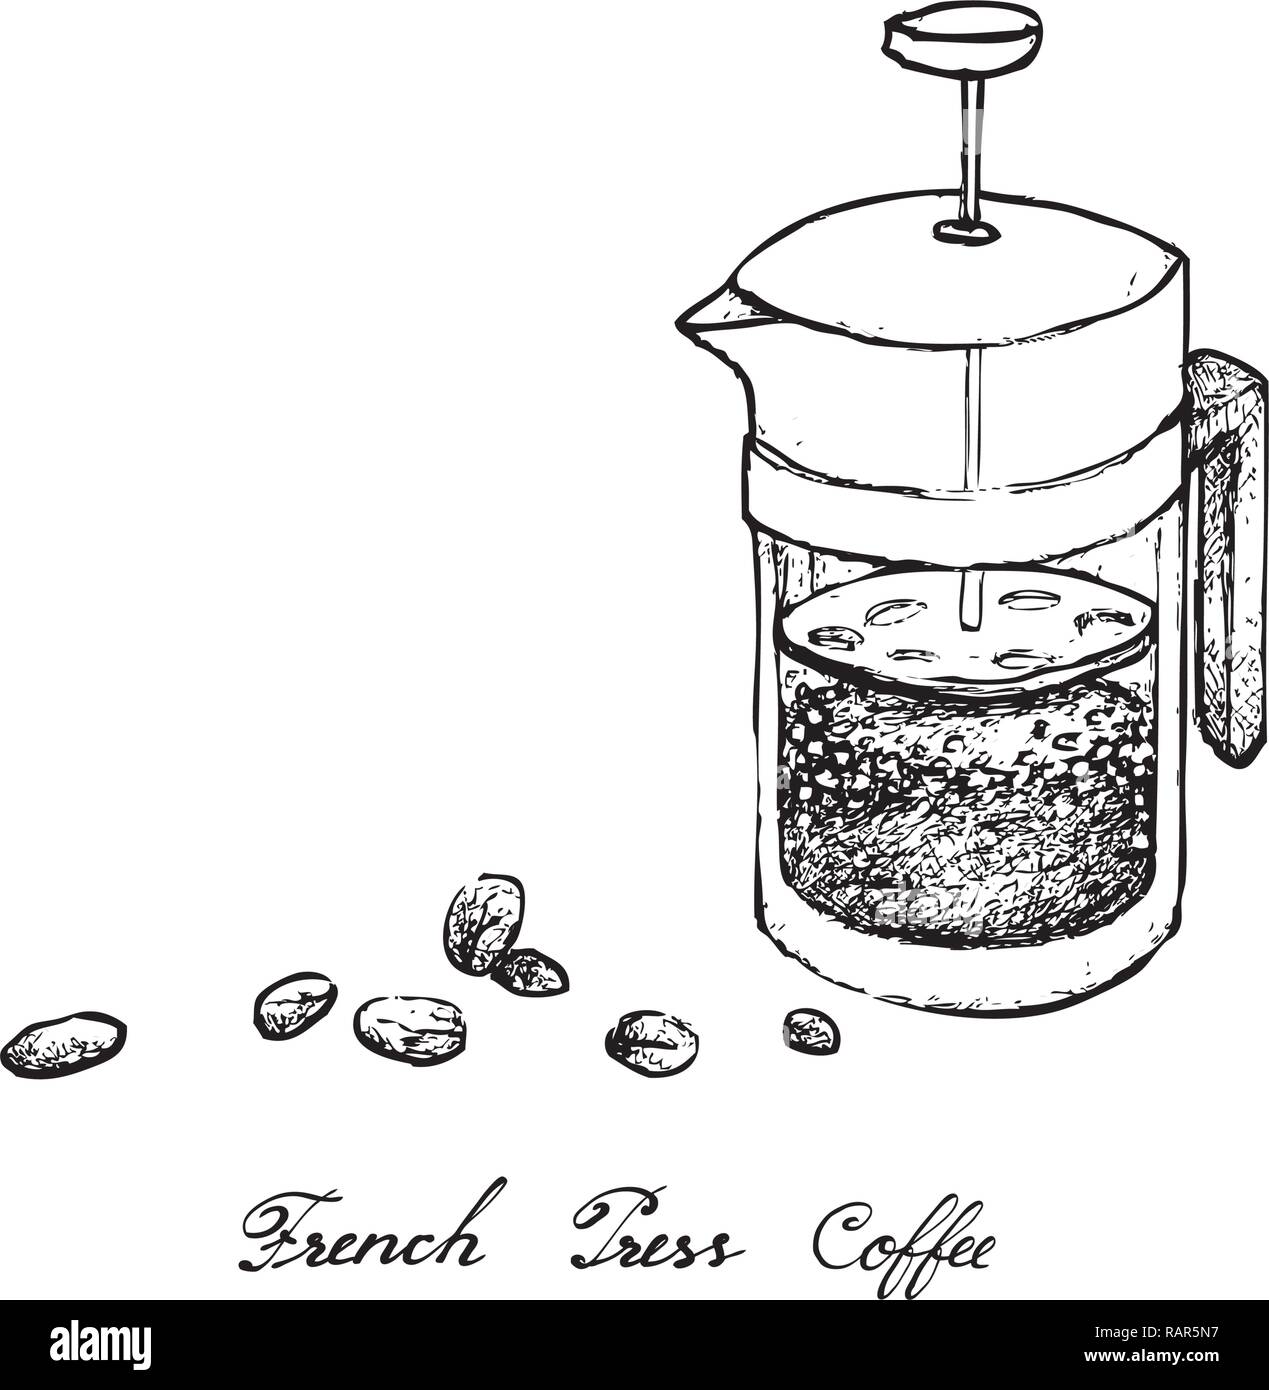 Abbildung Hand gezeichnete Skizze von Kaffeebohnen mit French Press  Kaffeebereiter Topf oder ein Kolben, eine traditionelle französische  Kaffeemaschine Stock-Vektorgrafik - Alamy